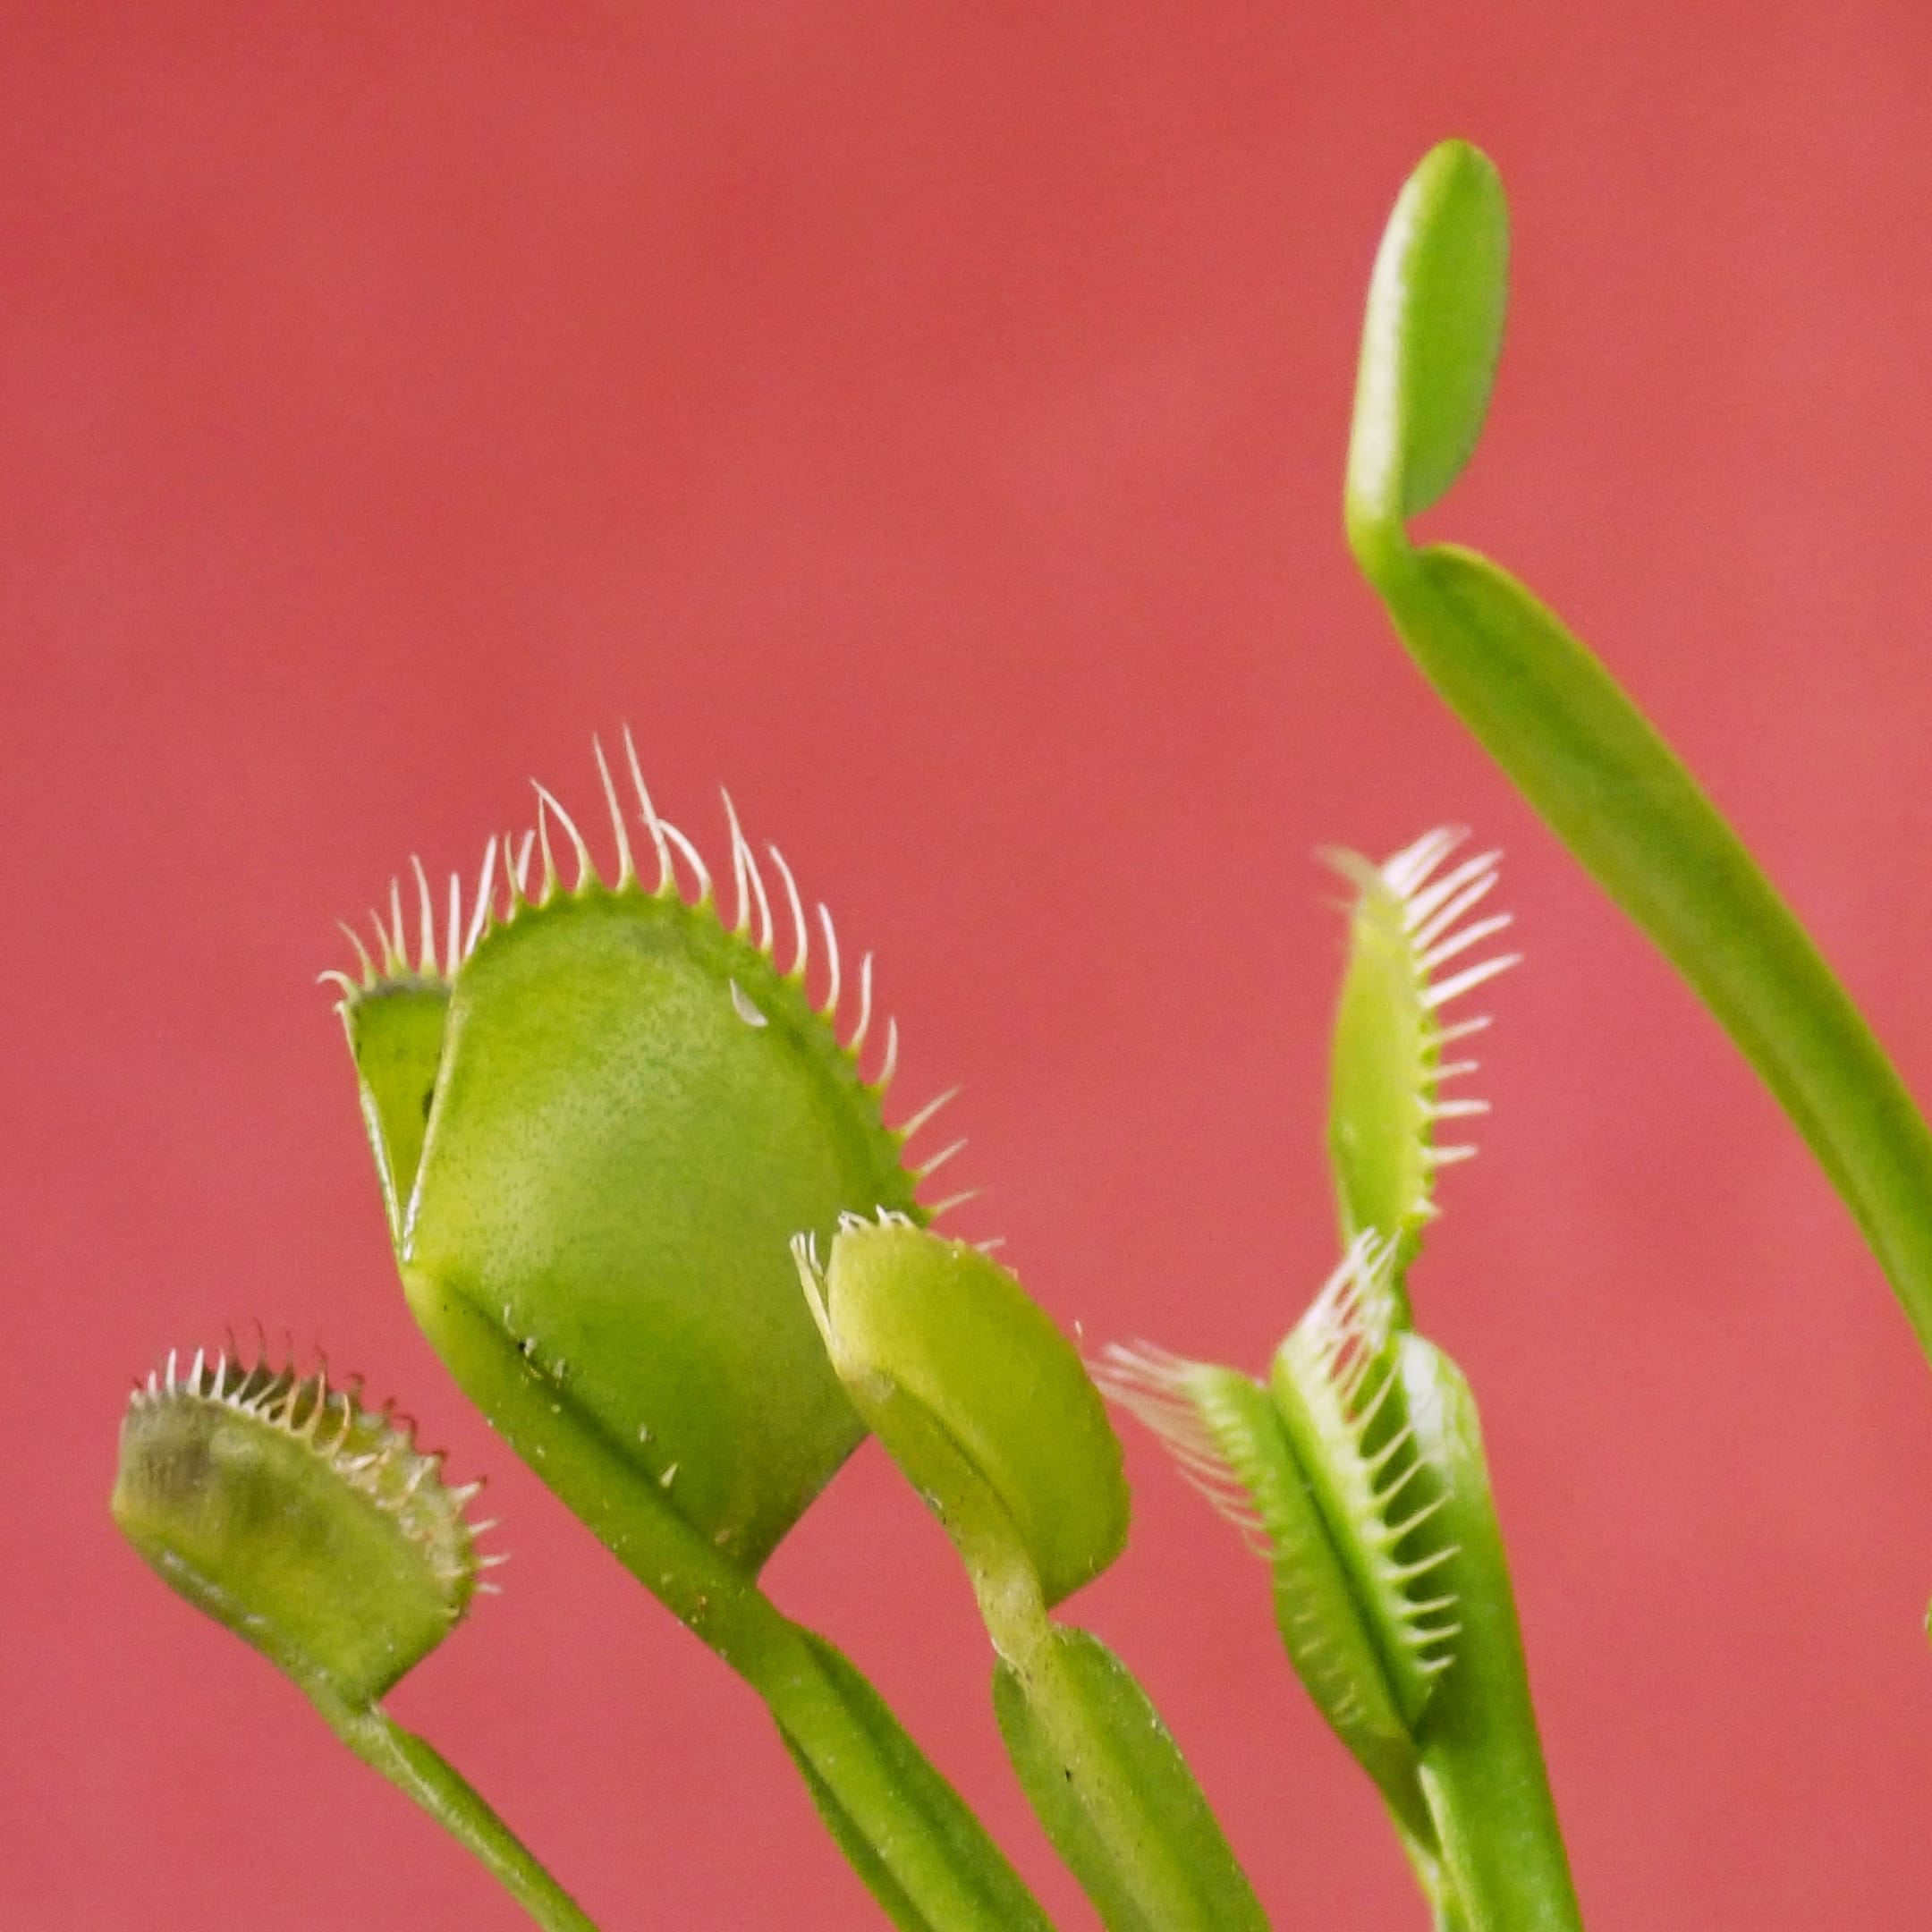 Хищное растение Венерина мухоловка (лат. Dionaea muscipula). Фото: Carla Anne / unsplash.com